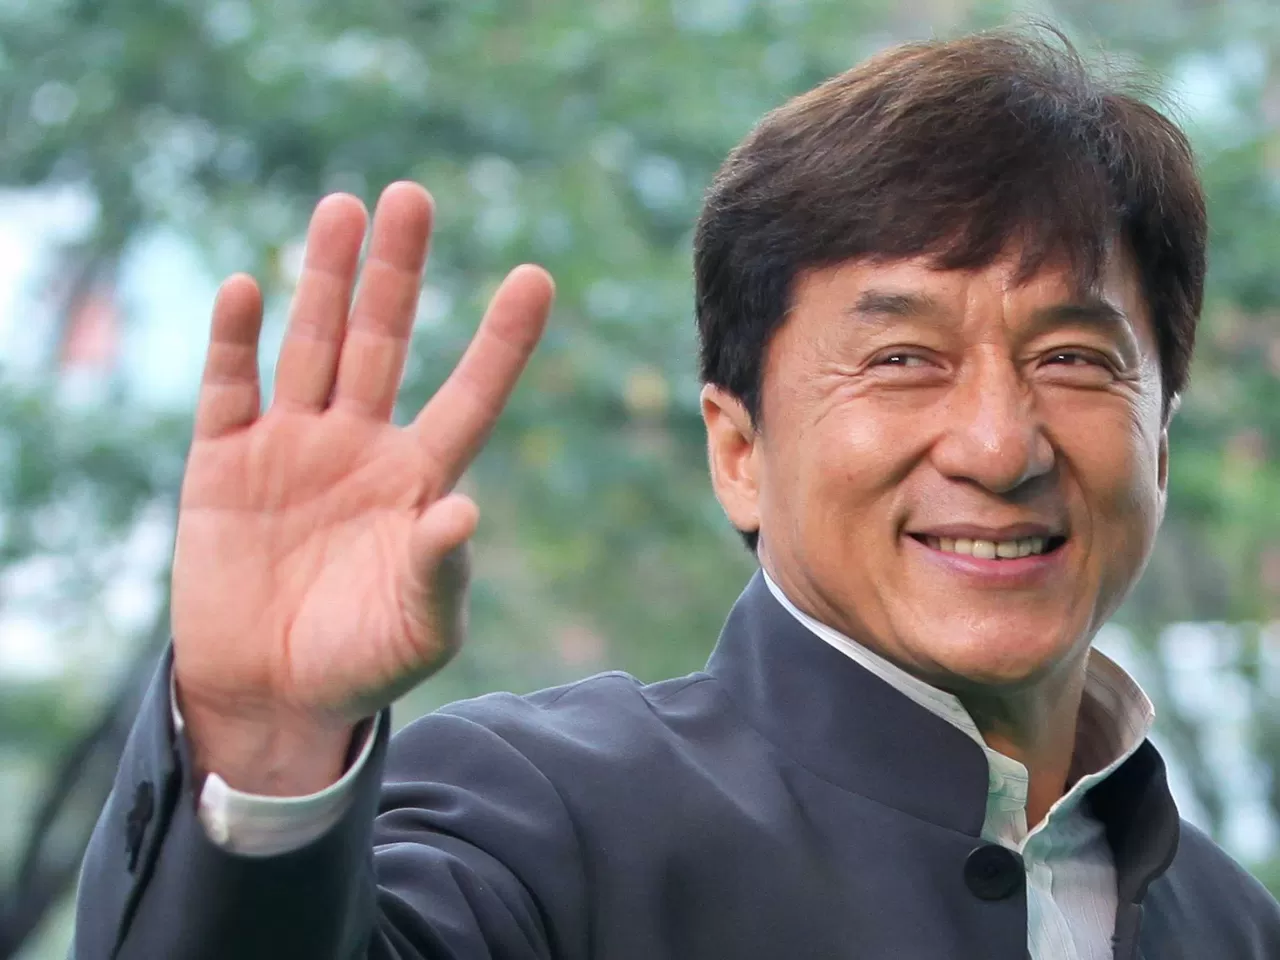 En İyi Jackie Chan Filmleri - IMDb Puanı En Yüksek 16 Jackie Chan Filmi